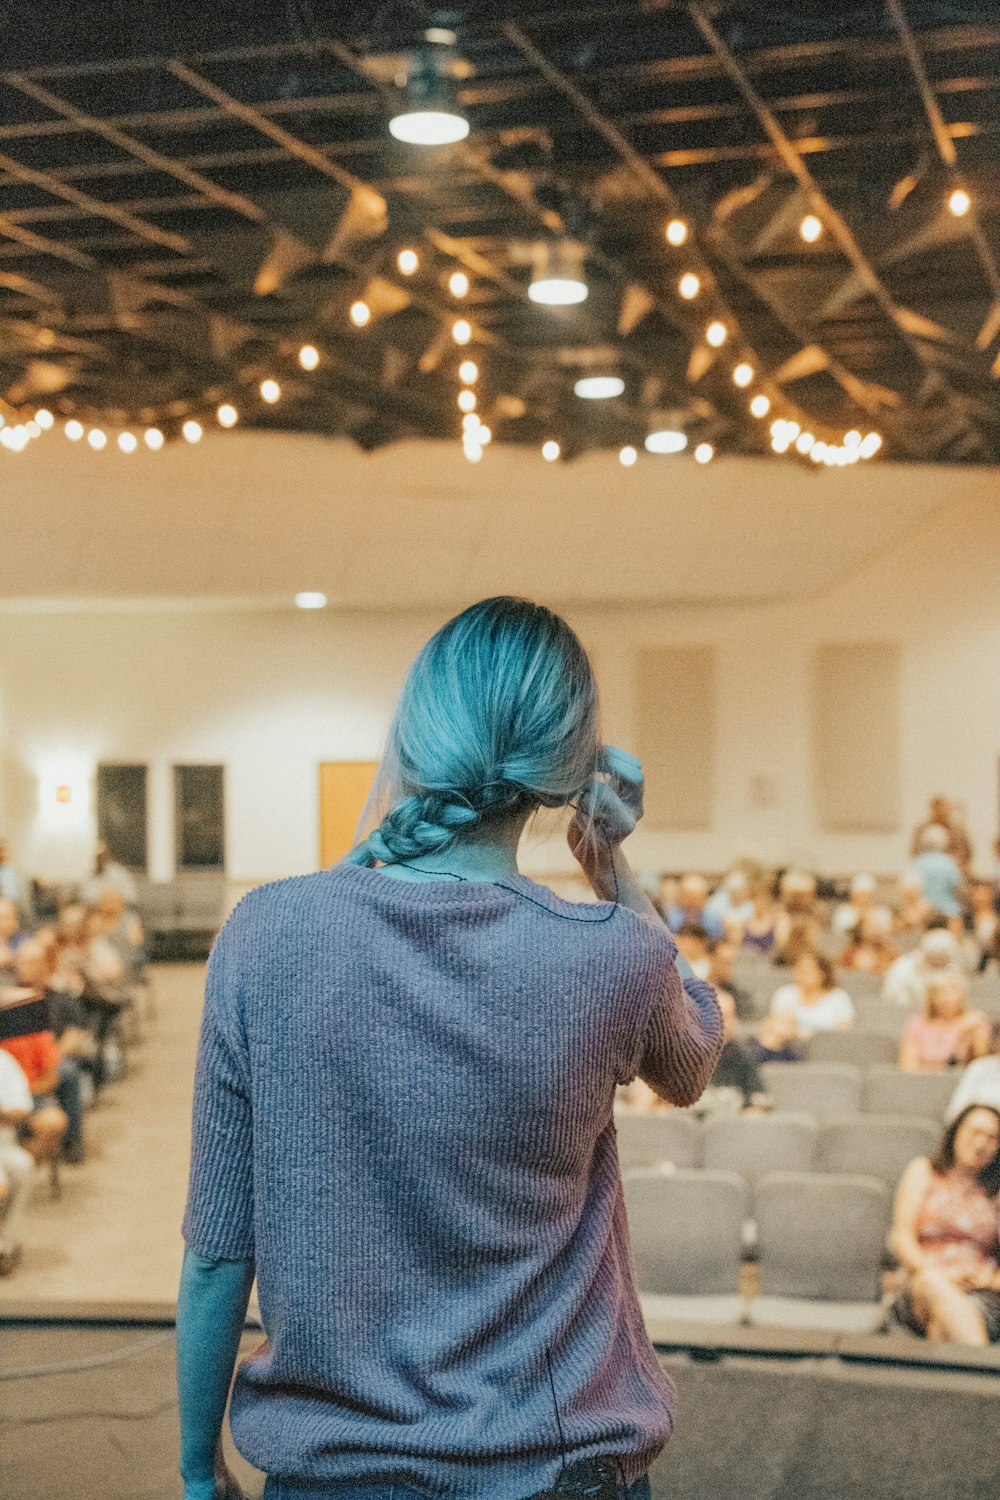 Una mujer con cabello azul parada frente a una audiencia